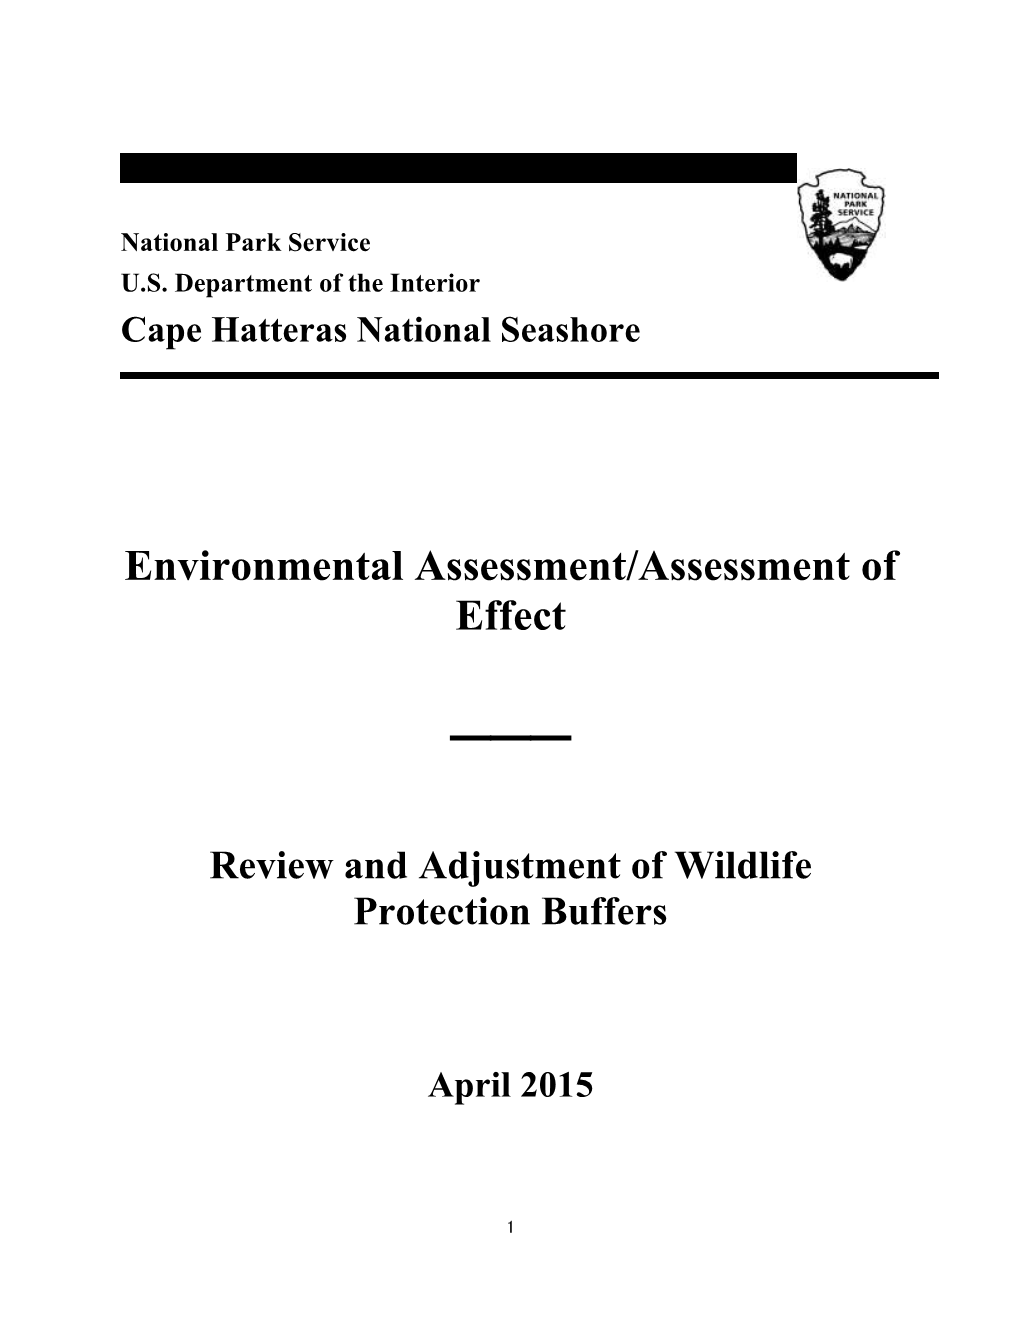 Environmental Assessment/Assessment of Effect ___